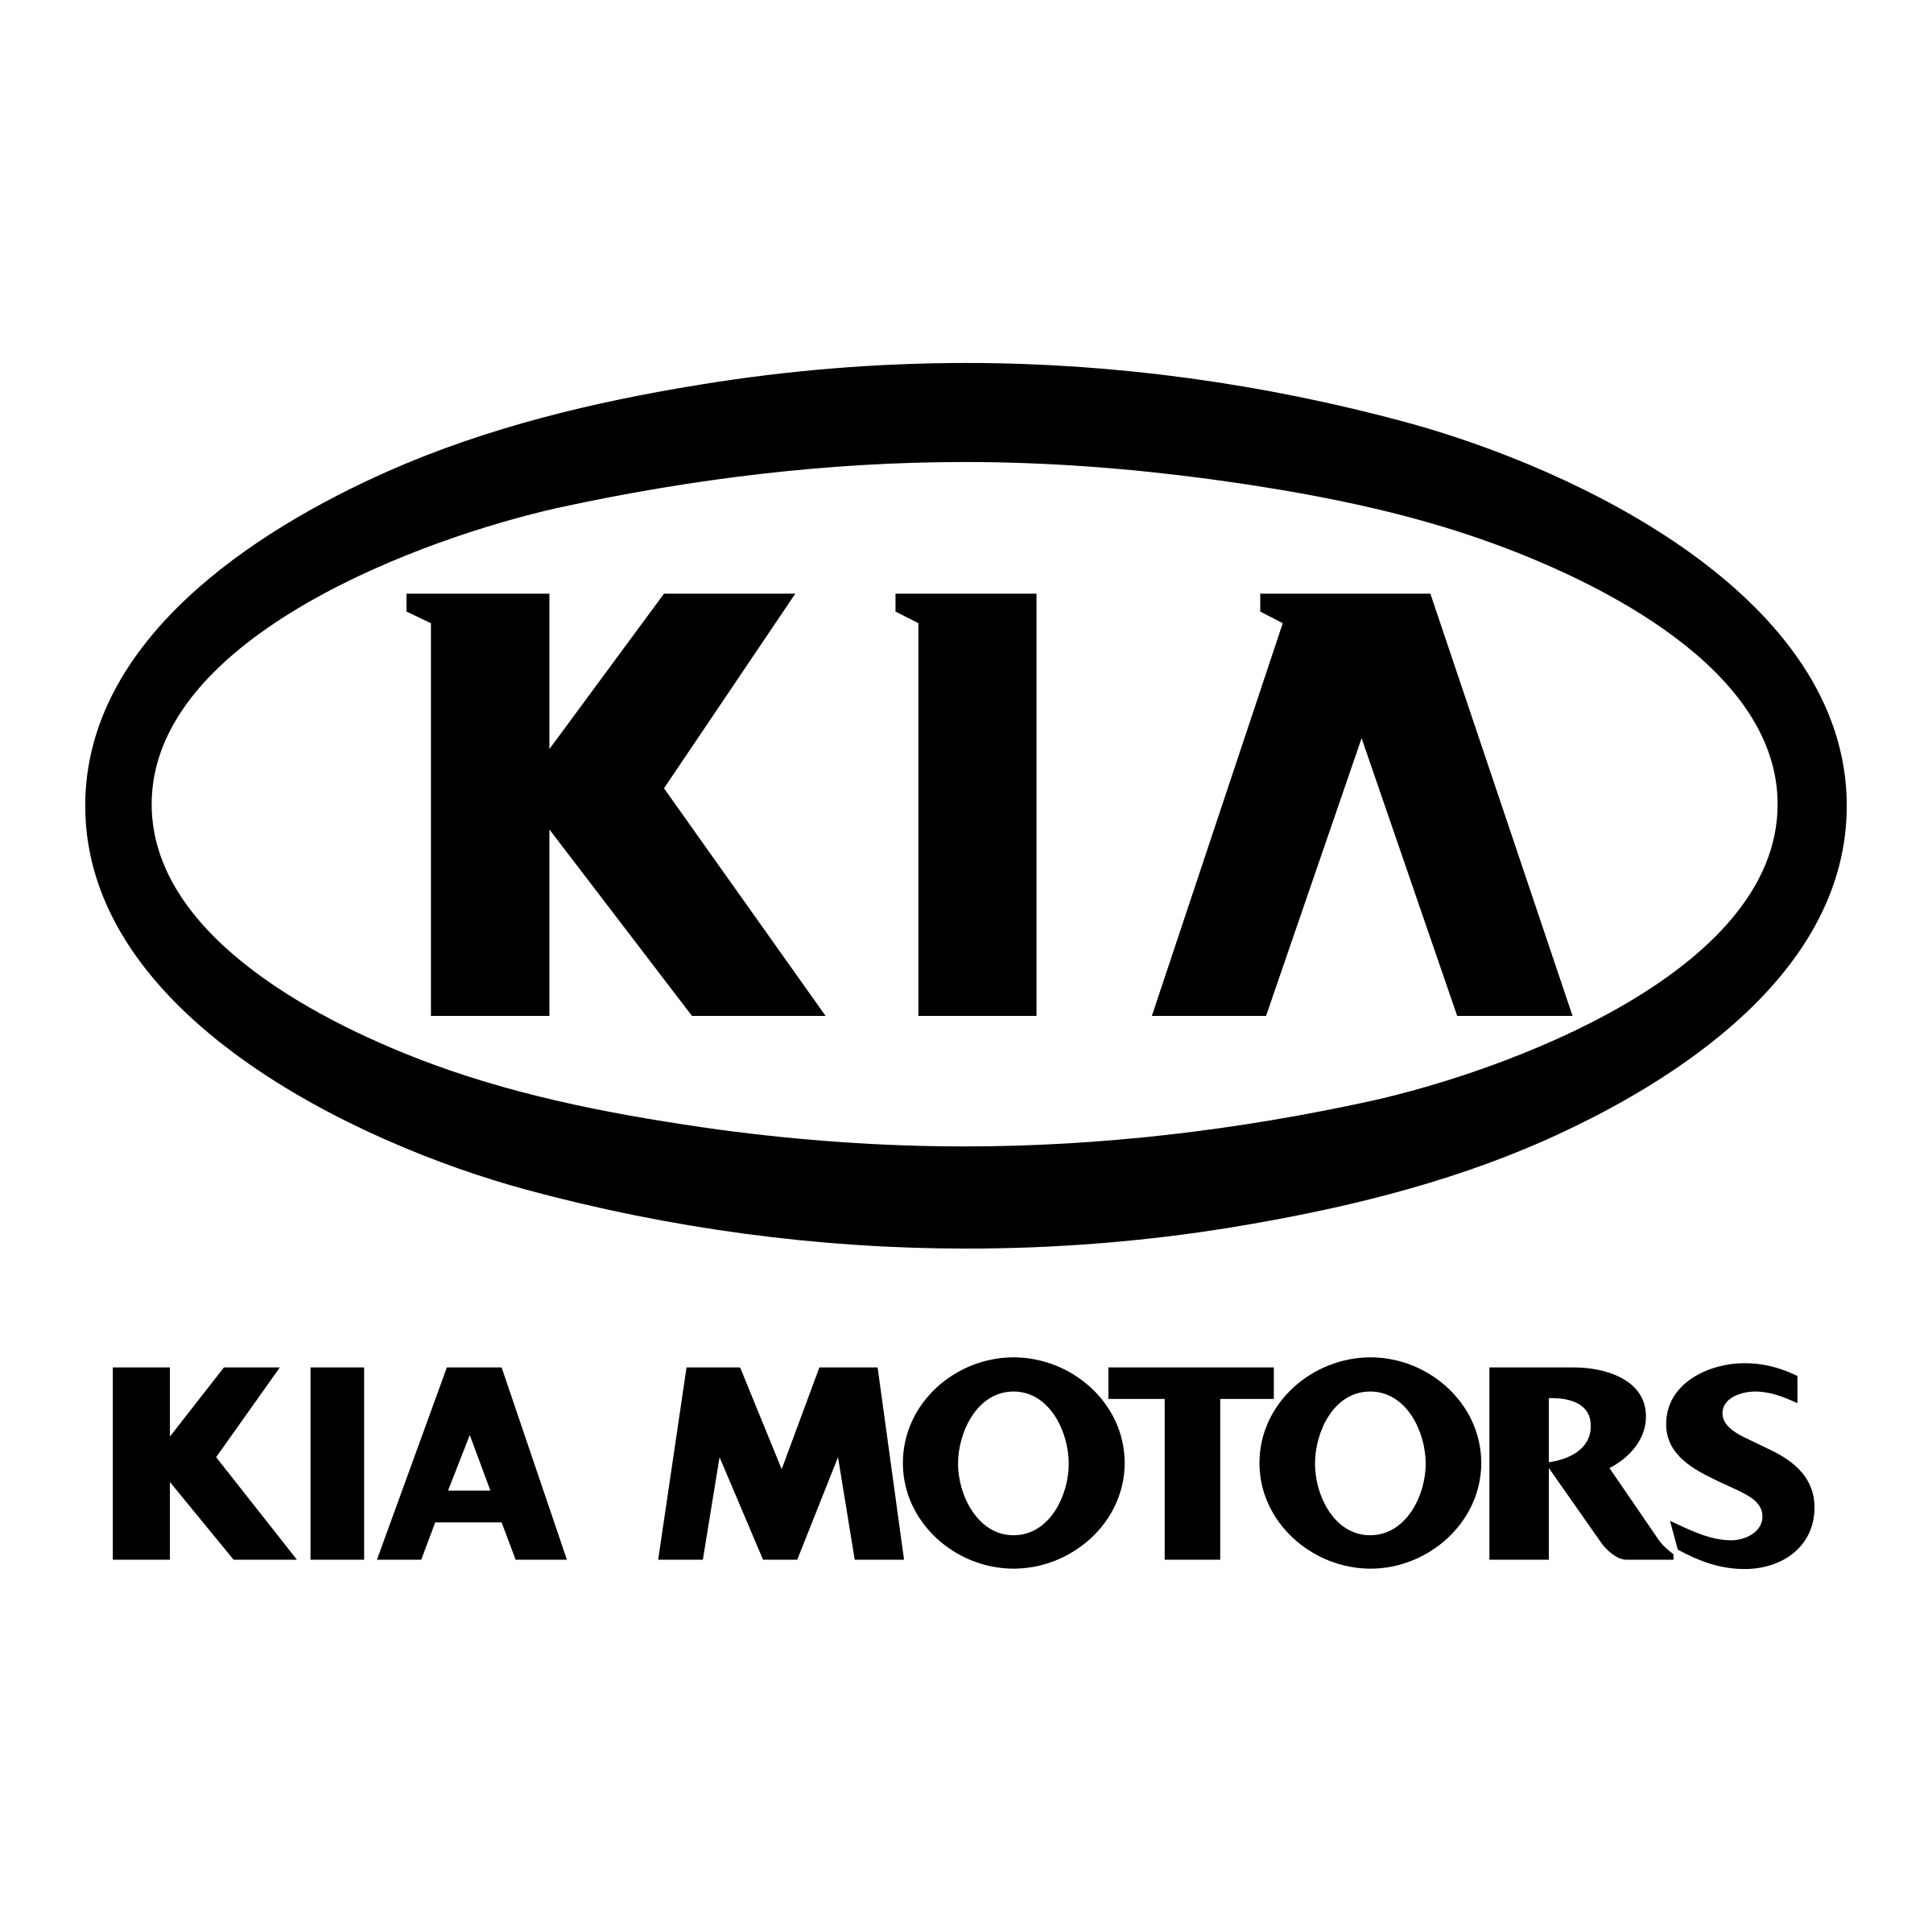 Kia Motors Logo - Kia Motors Logo PNG Transparent & SVG Vector